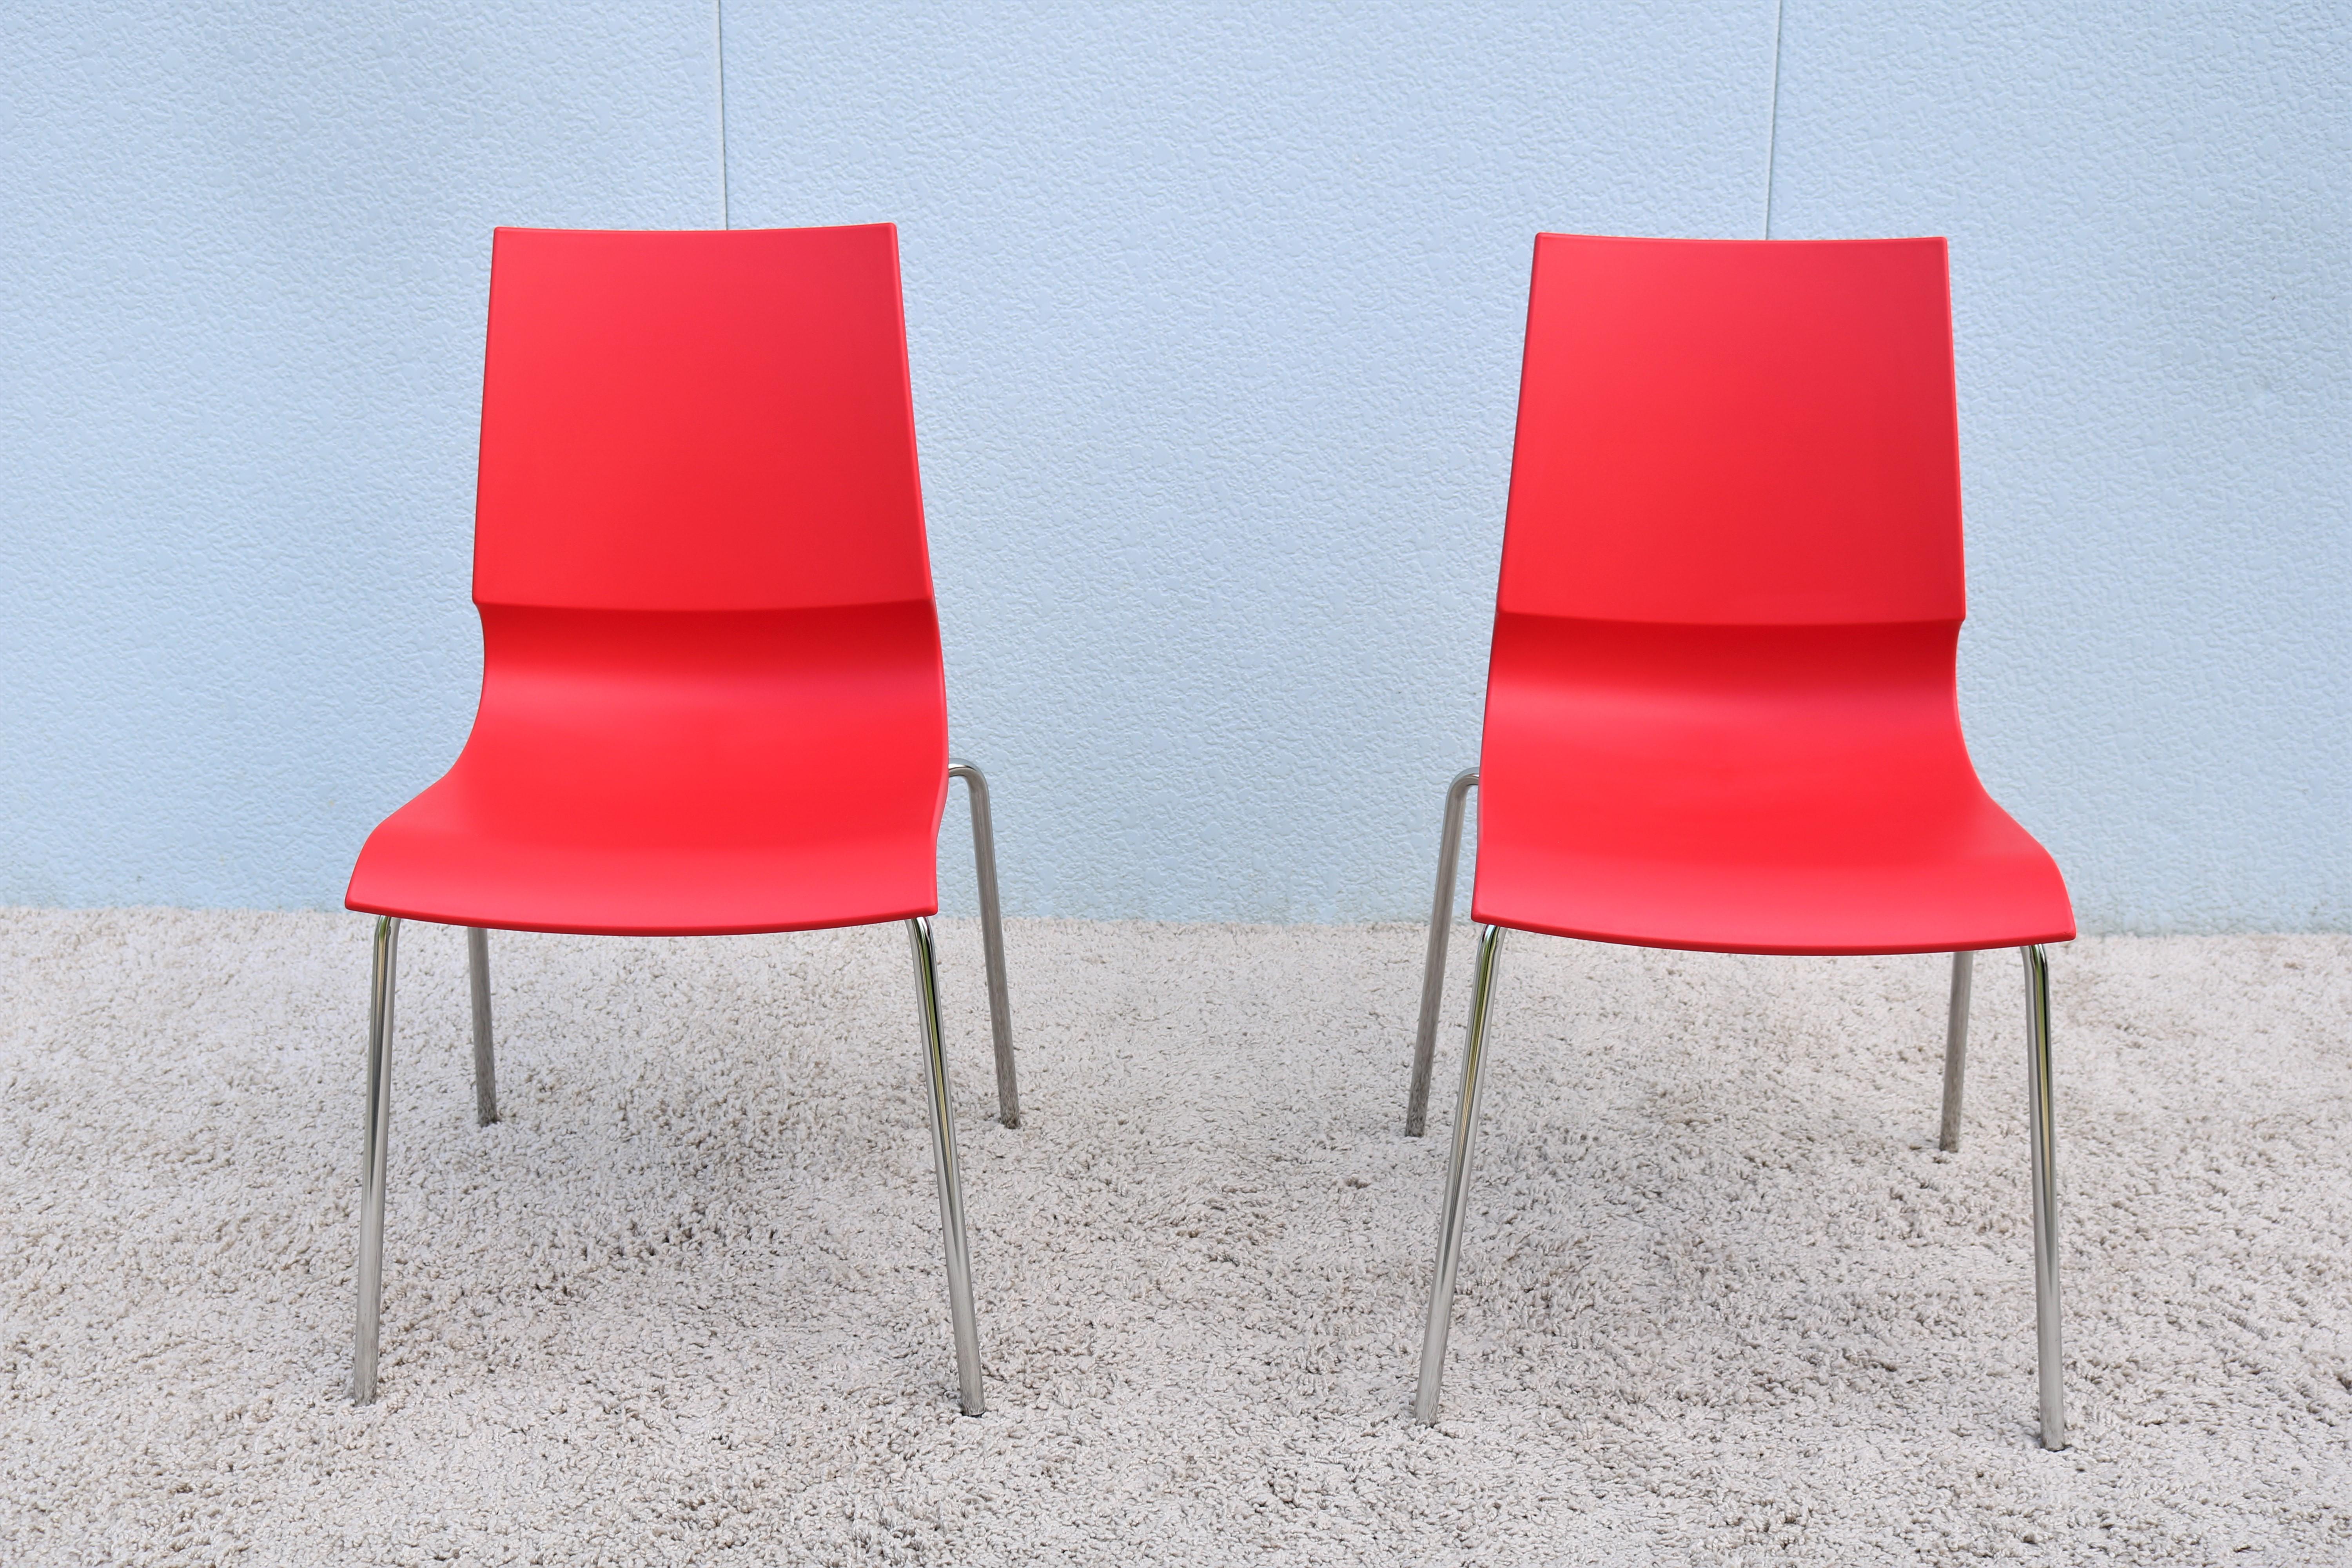 Diese schlanken und eleganten Ricciolina-Stühle sind stilvoll und funktionell. 
Die markante geschwungene Verbindung zwischen Sitz und Rückenlehne verleiht dem Stuhl Flexibilität und Ergonomie. 
Durch sein geringes Gewicht und seine